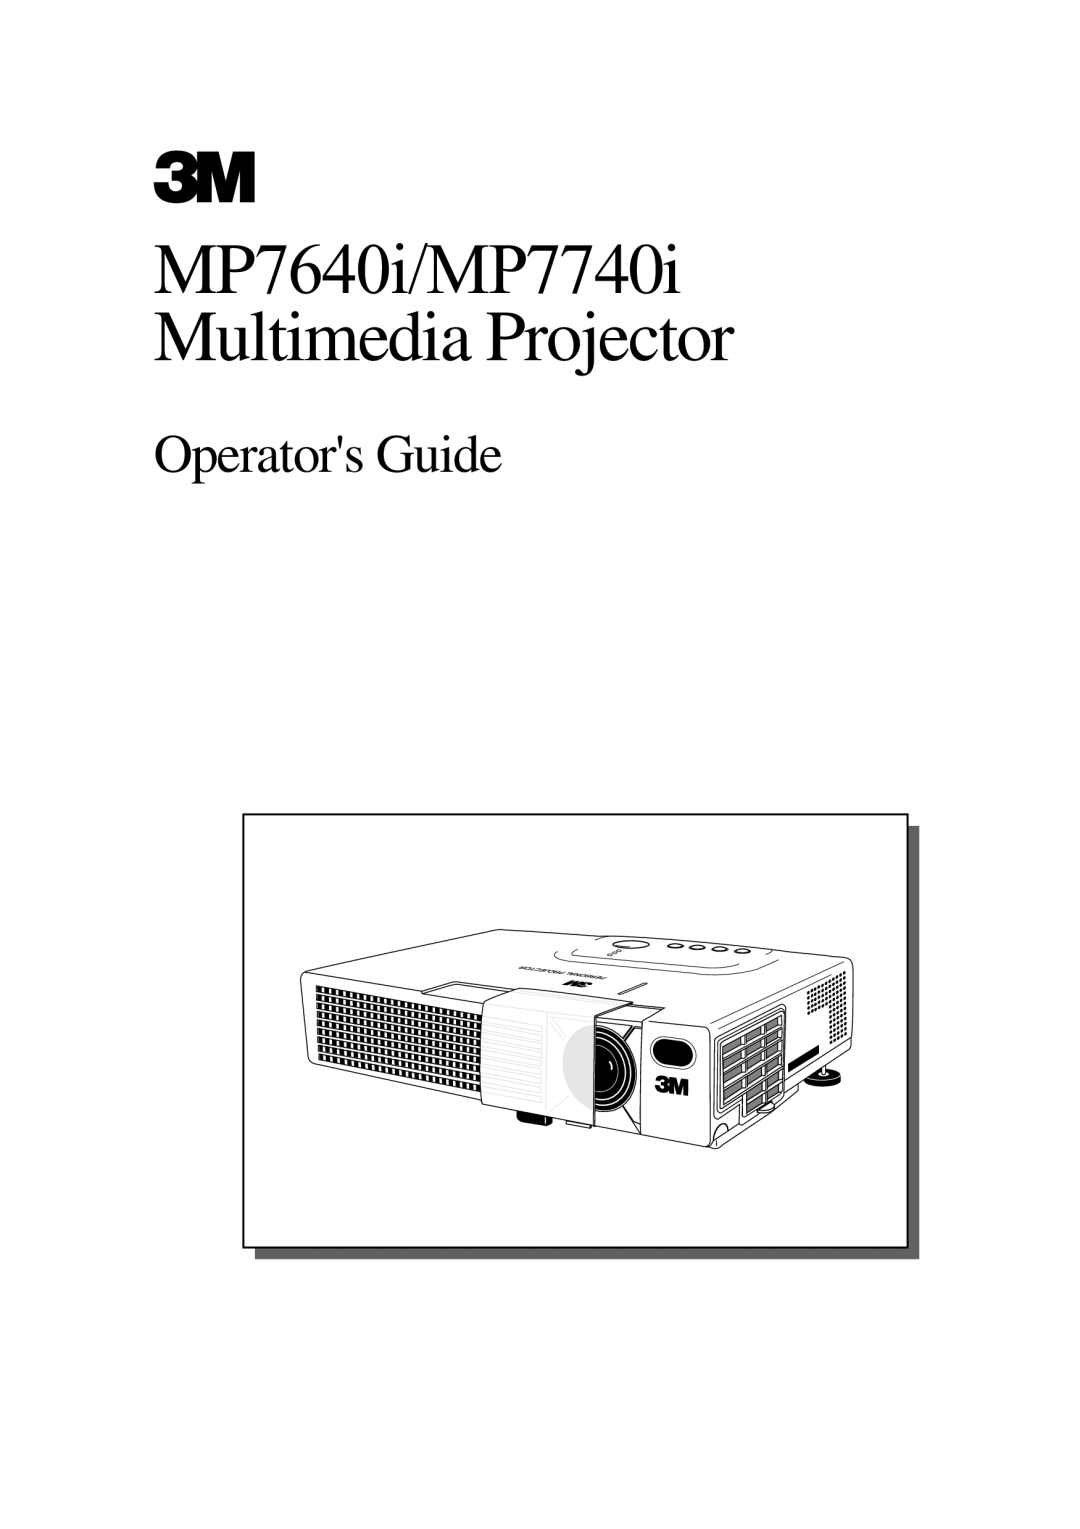 3M manual MP7640i/MP7740i Multimedia Projector, Operators Guide 